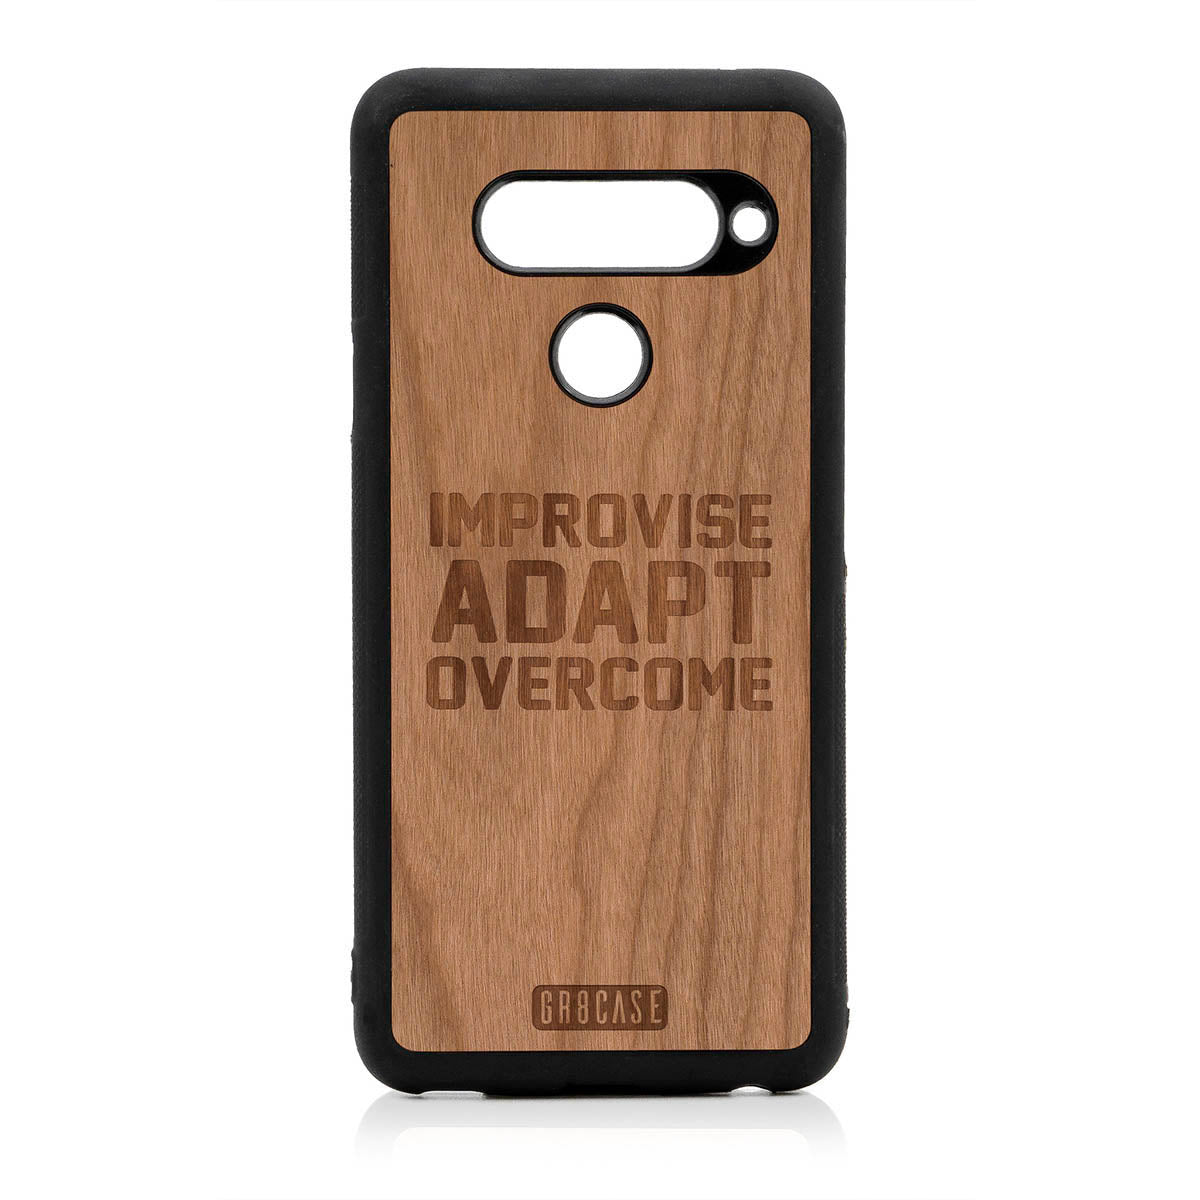 Improvise Adapt Overcome Design Wood Case For LG V40